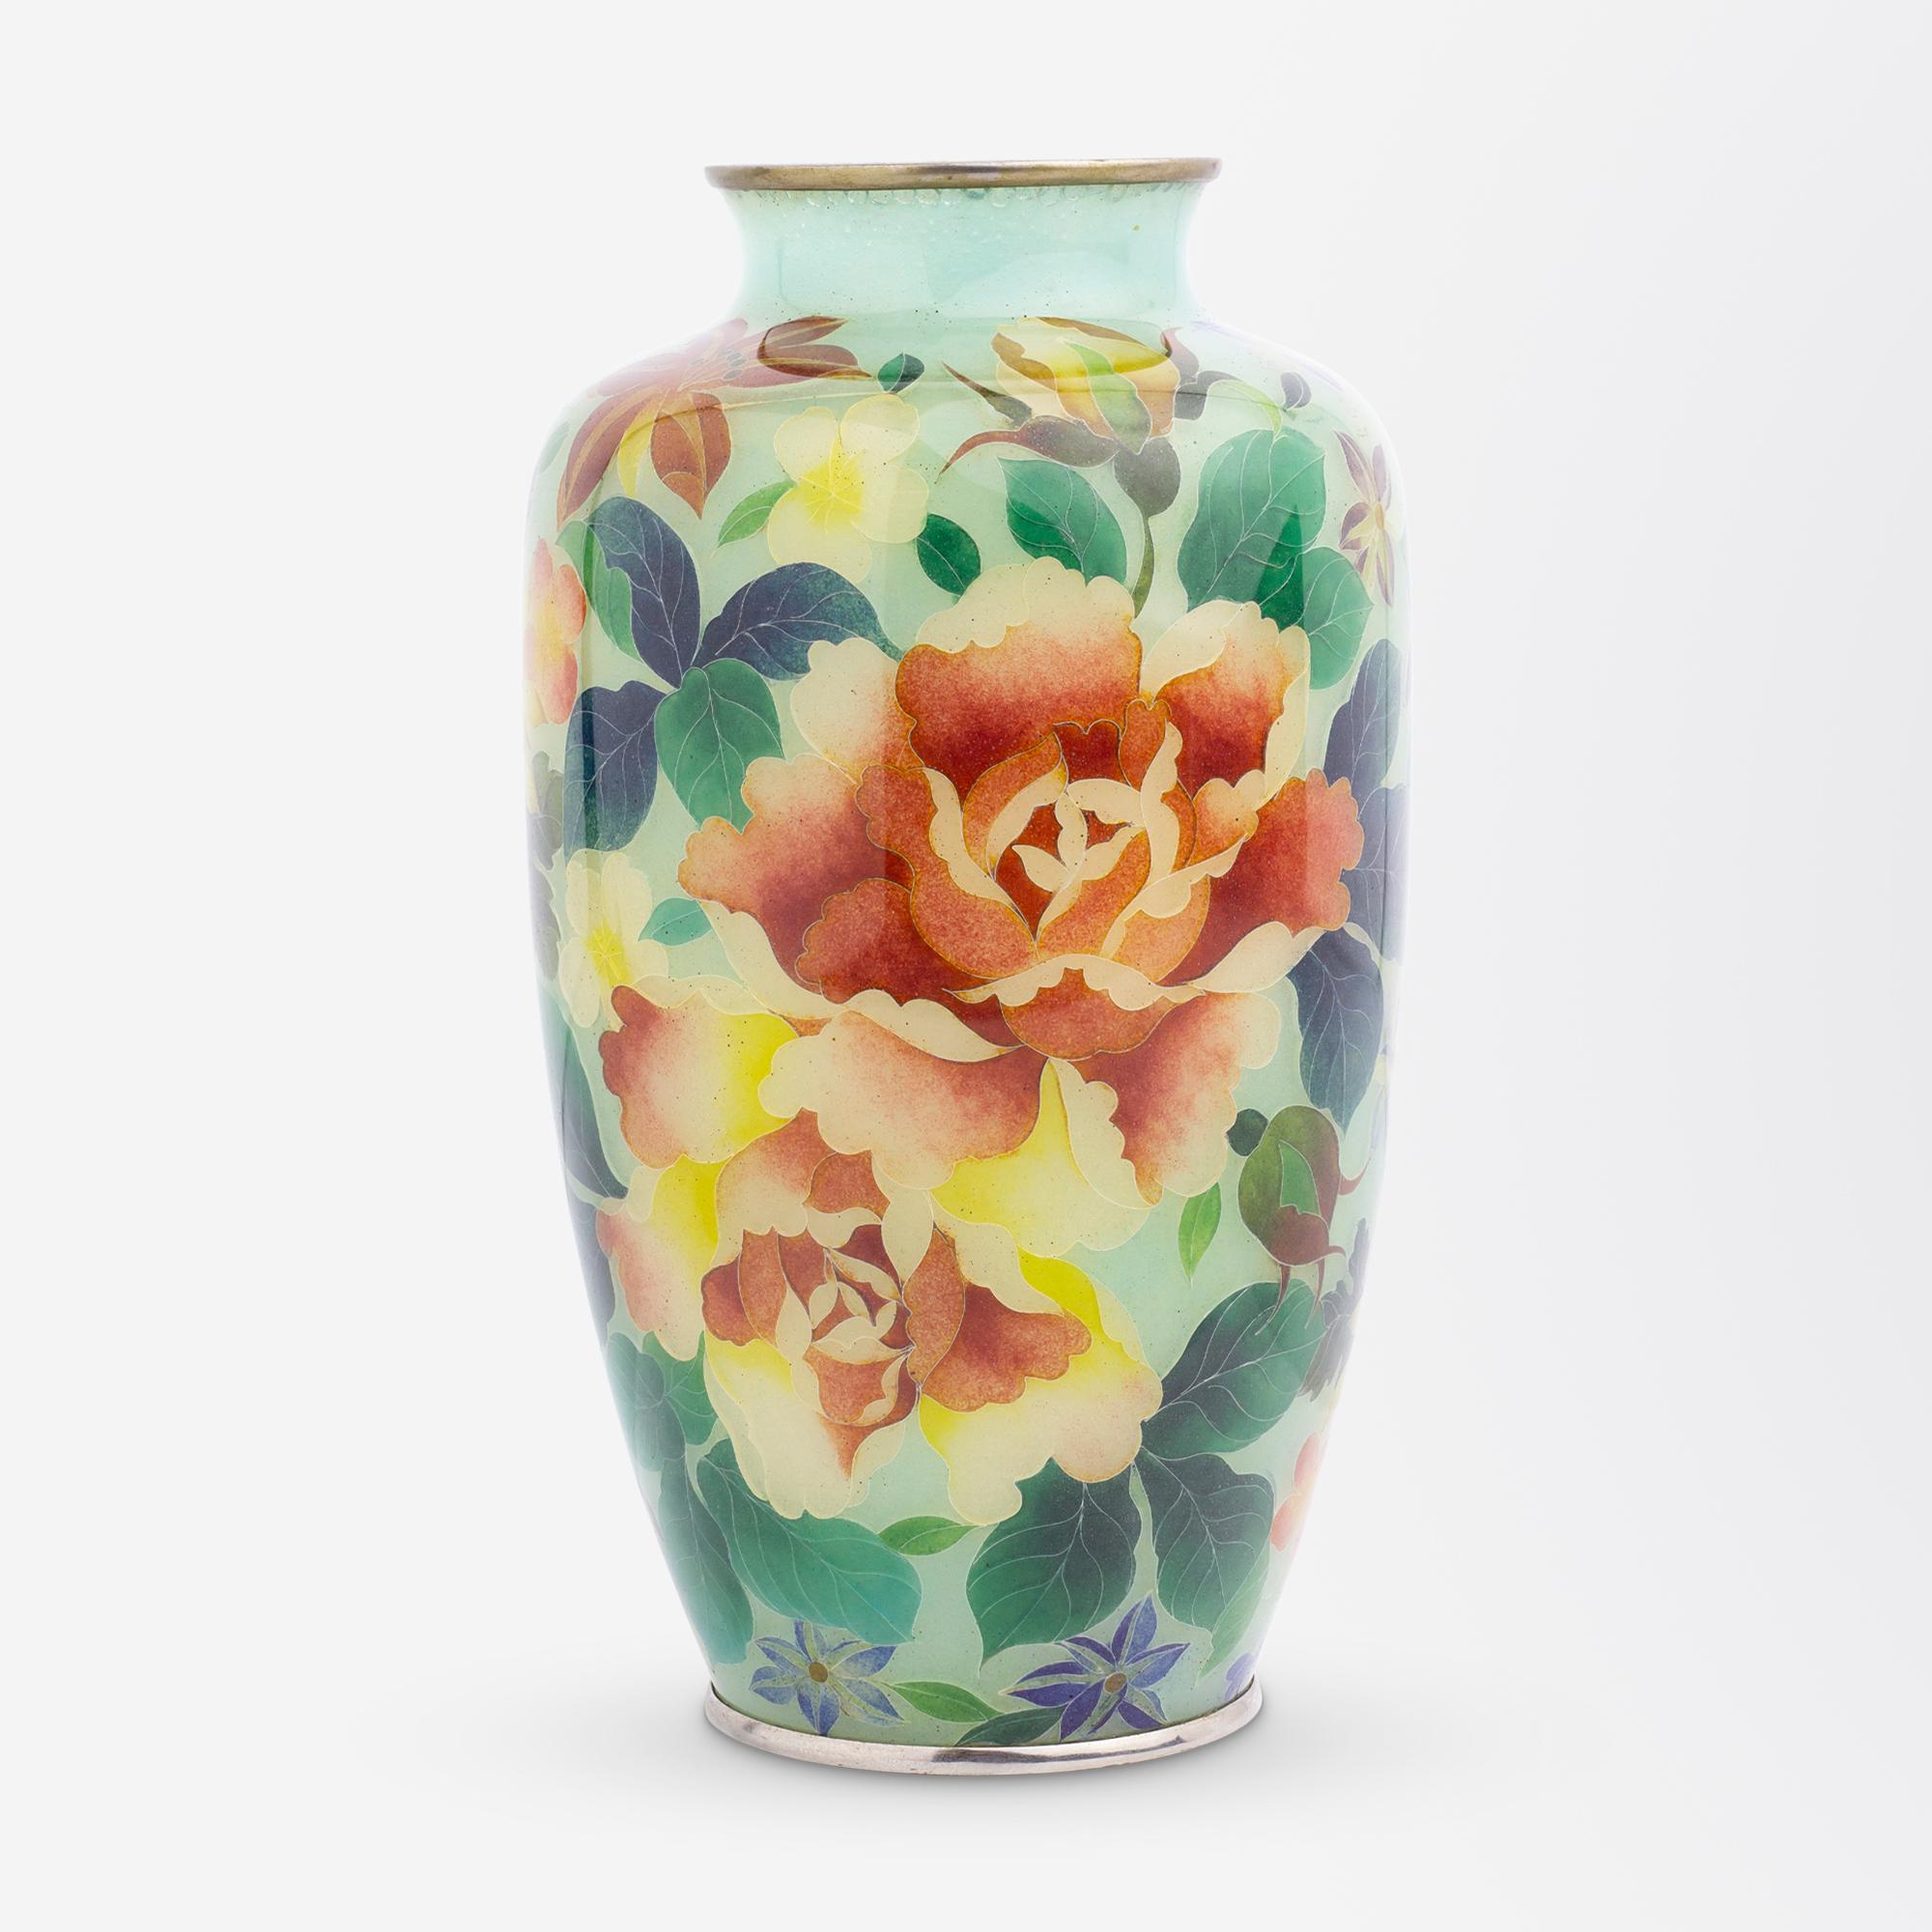 Ce vase en cloisonné plique-a-jour est un exemple exceptionnel de l'artisanat japonais de la fin de la période Meiji (1868-1912). La chose la plus remarquable à propos de ce vase délicat est qu'il est dans un état impeccable pour son âge, indiquant